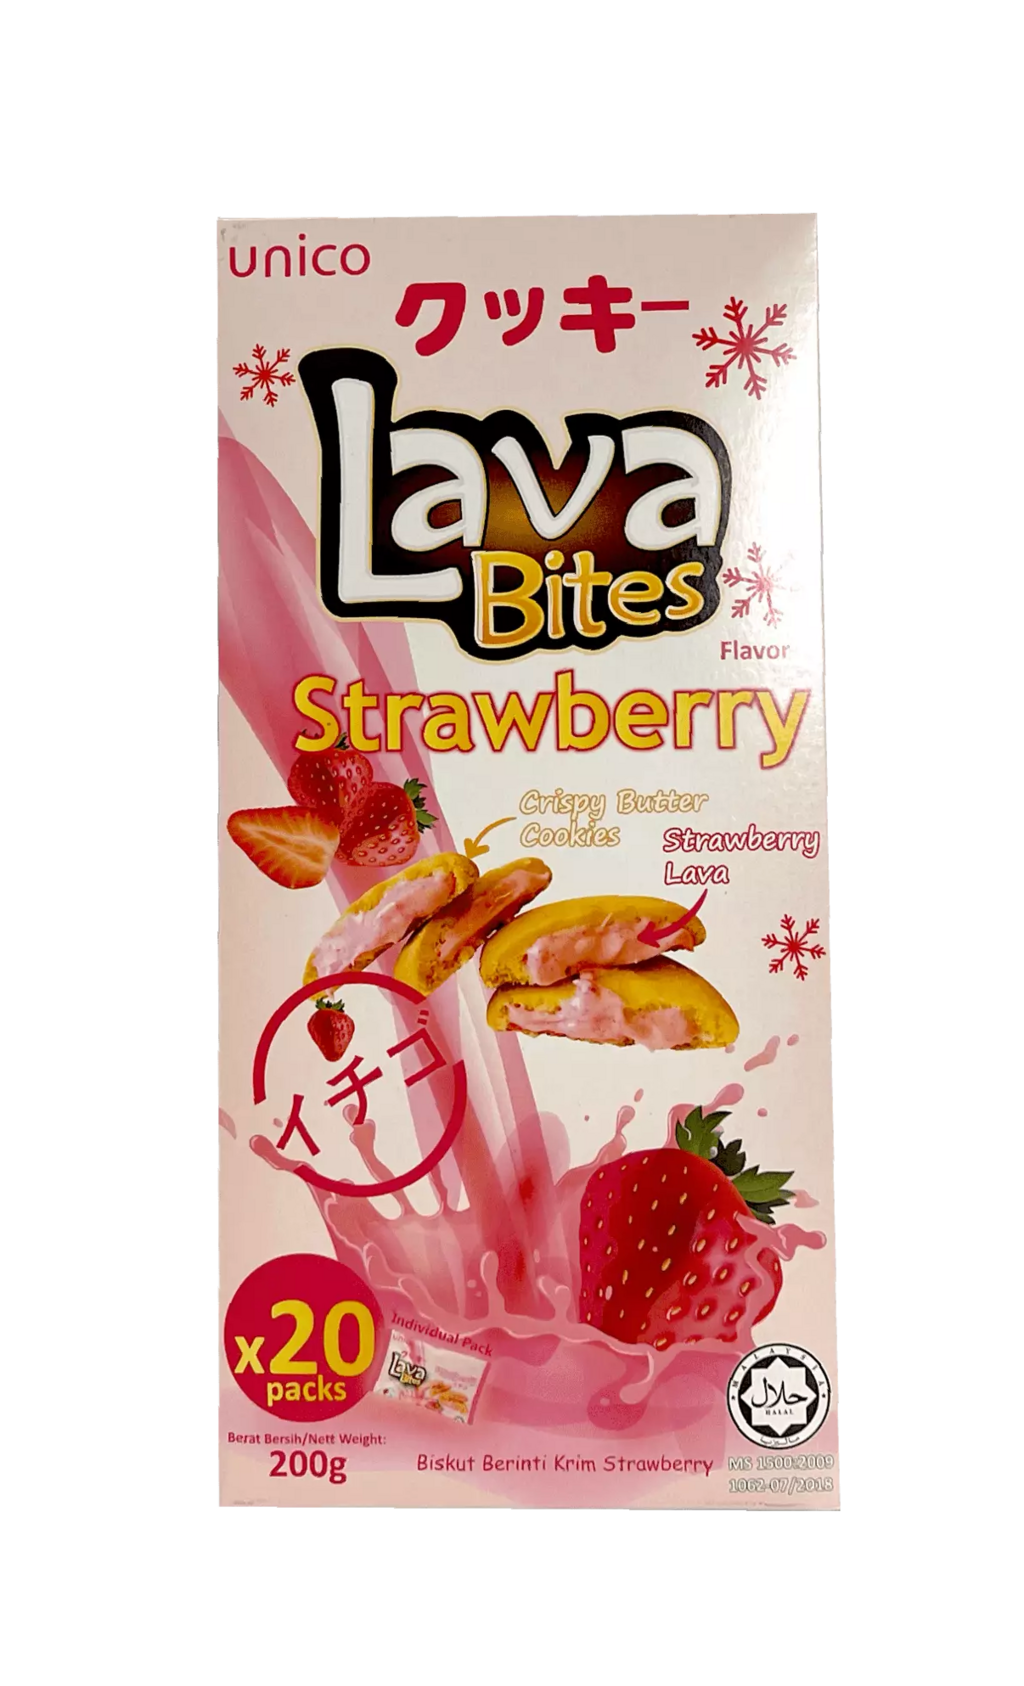 爆浆曲奇饼干草莓风味 200g My Lava Bites Unico 马来西亚